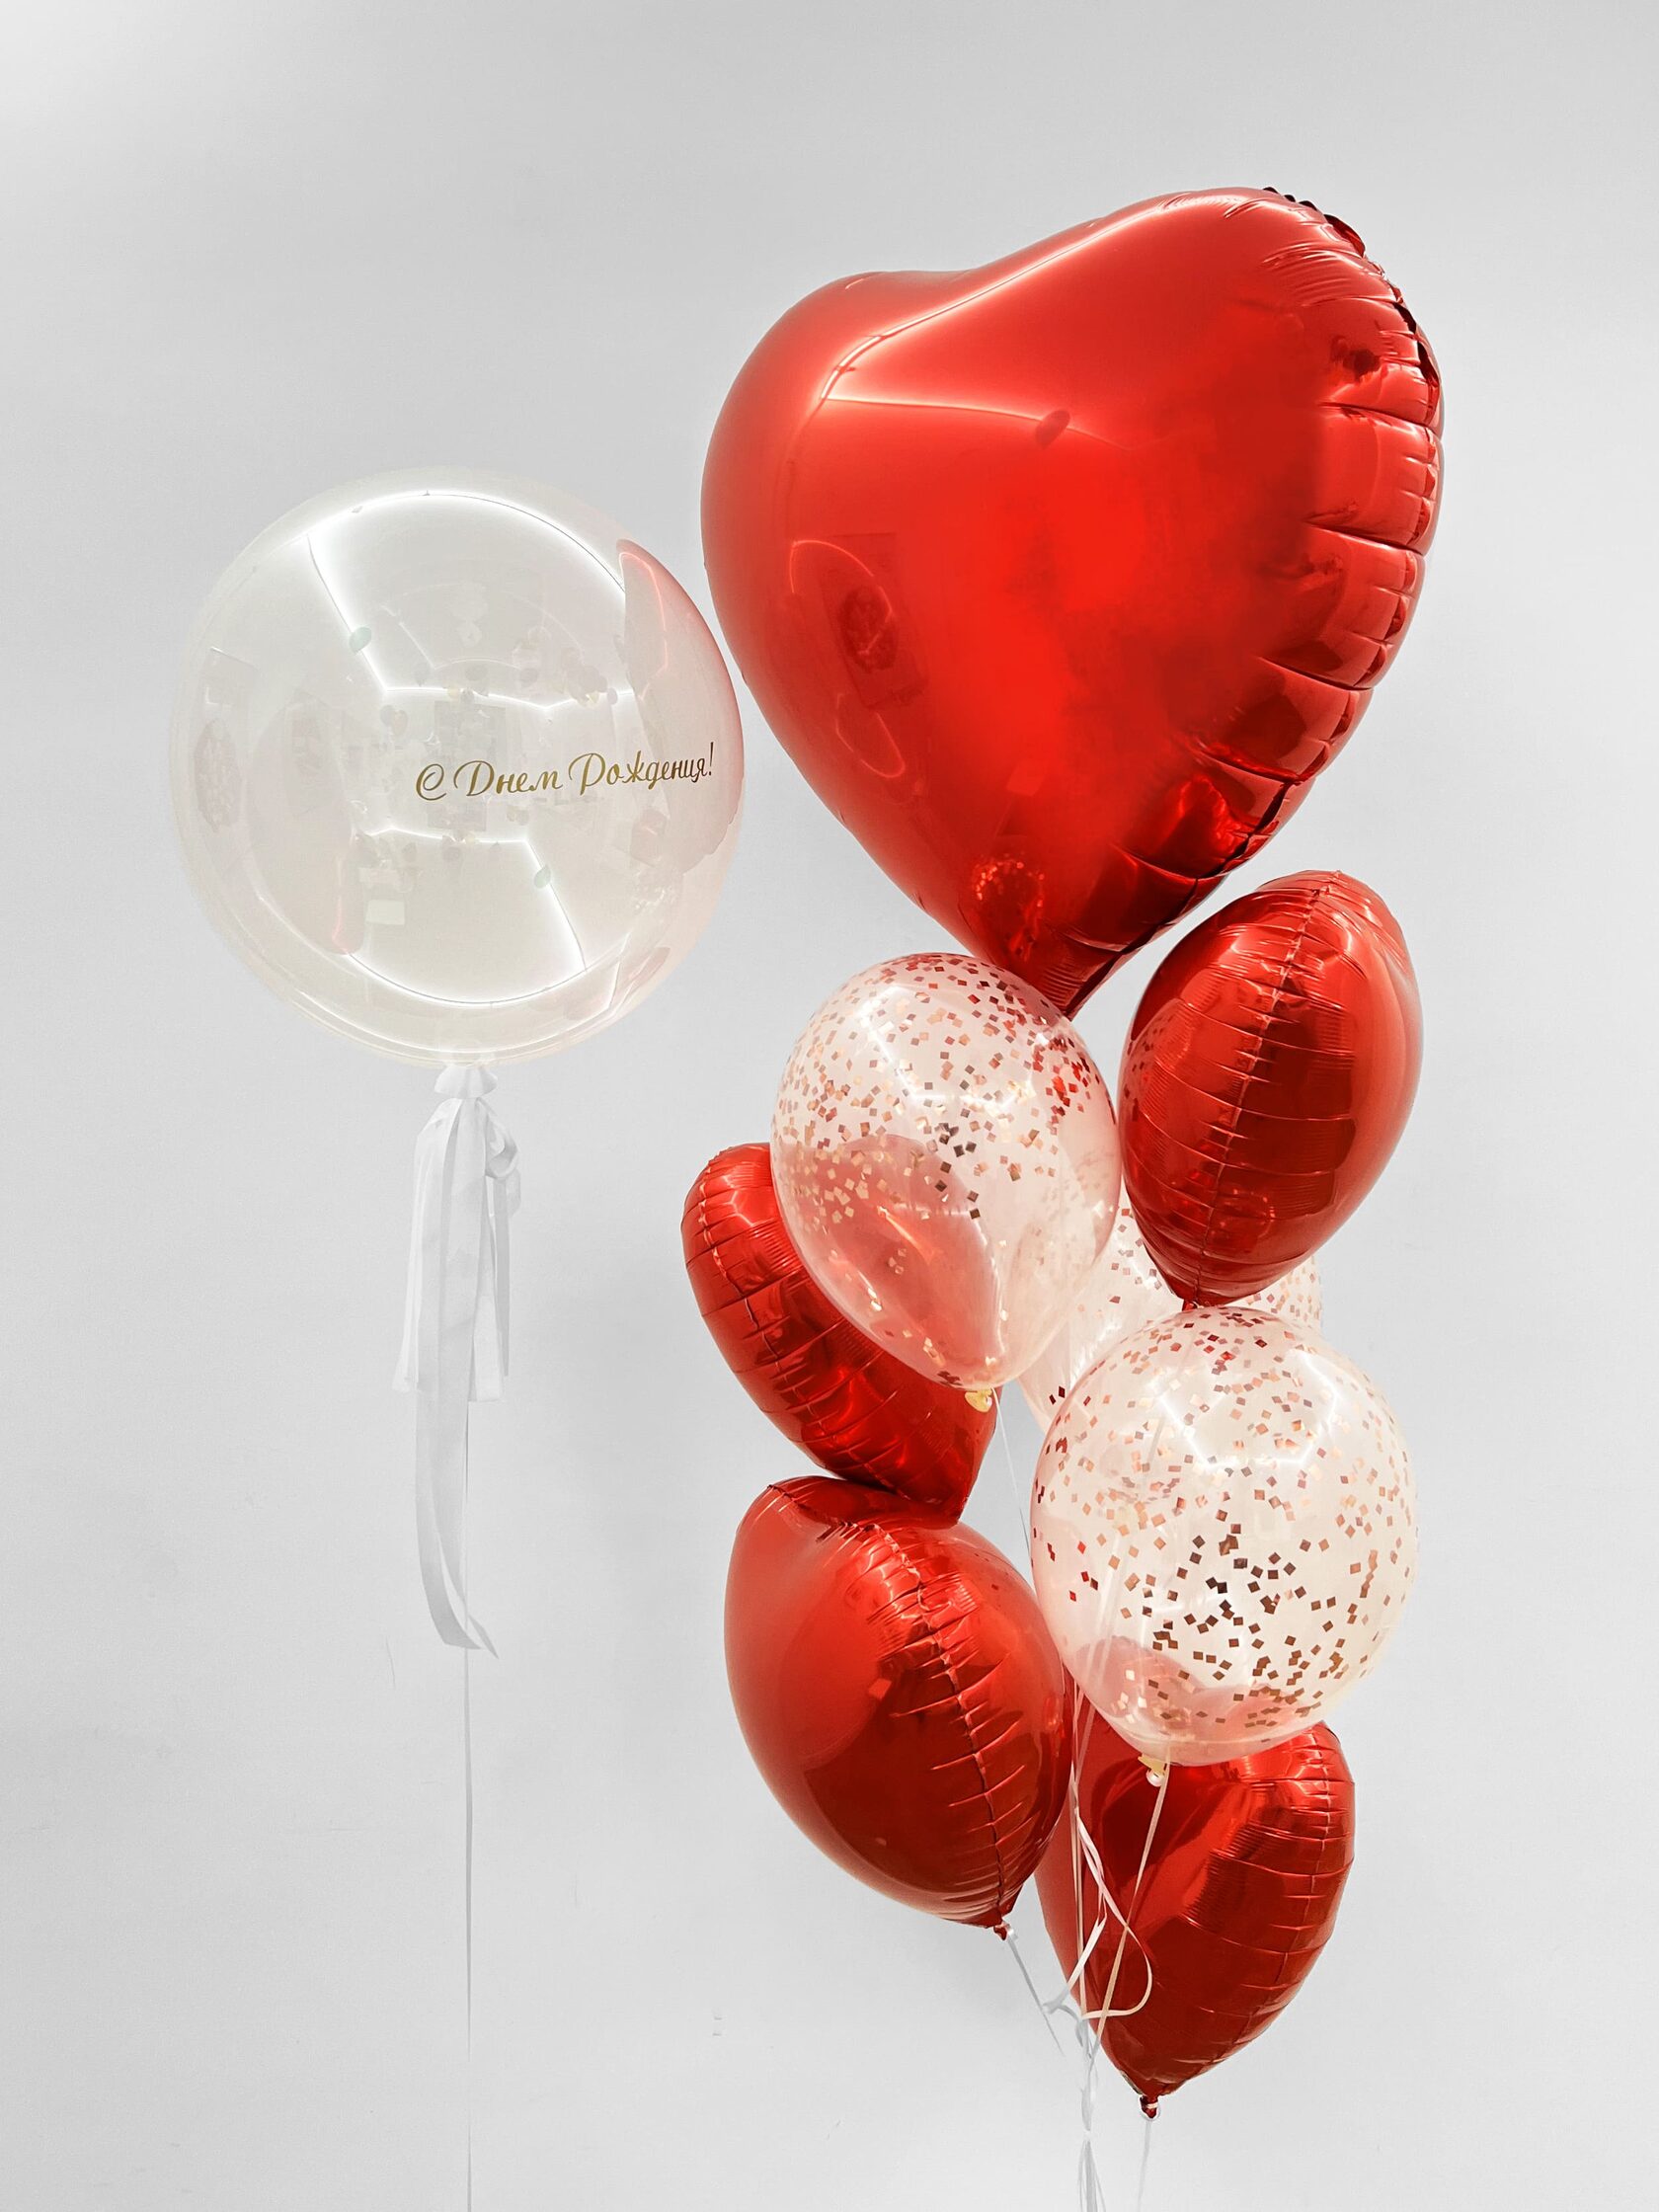 фонтан из воздушных шаров 1 сентября клен Фонтан из шаров «Алое сердце» - 10 шаров + шар Bubbles (сфера) - красные сердца конфетти